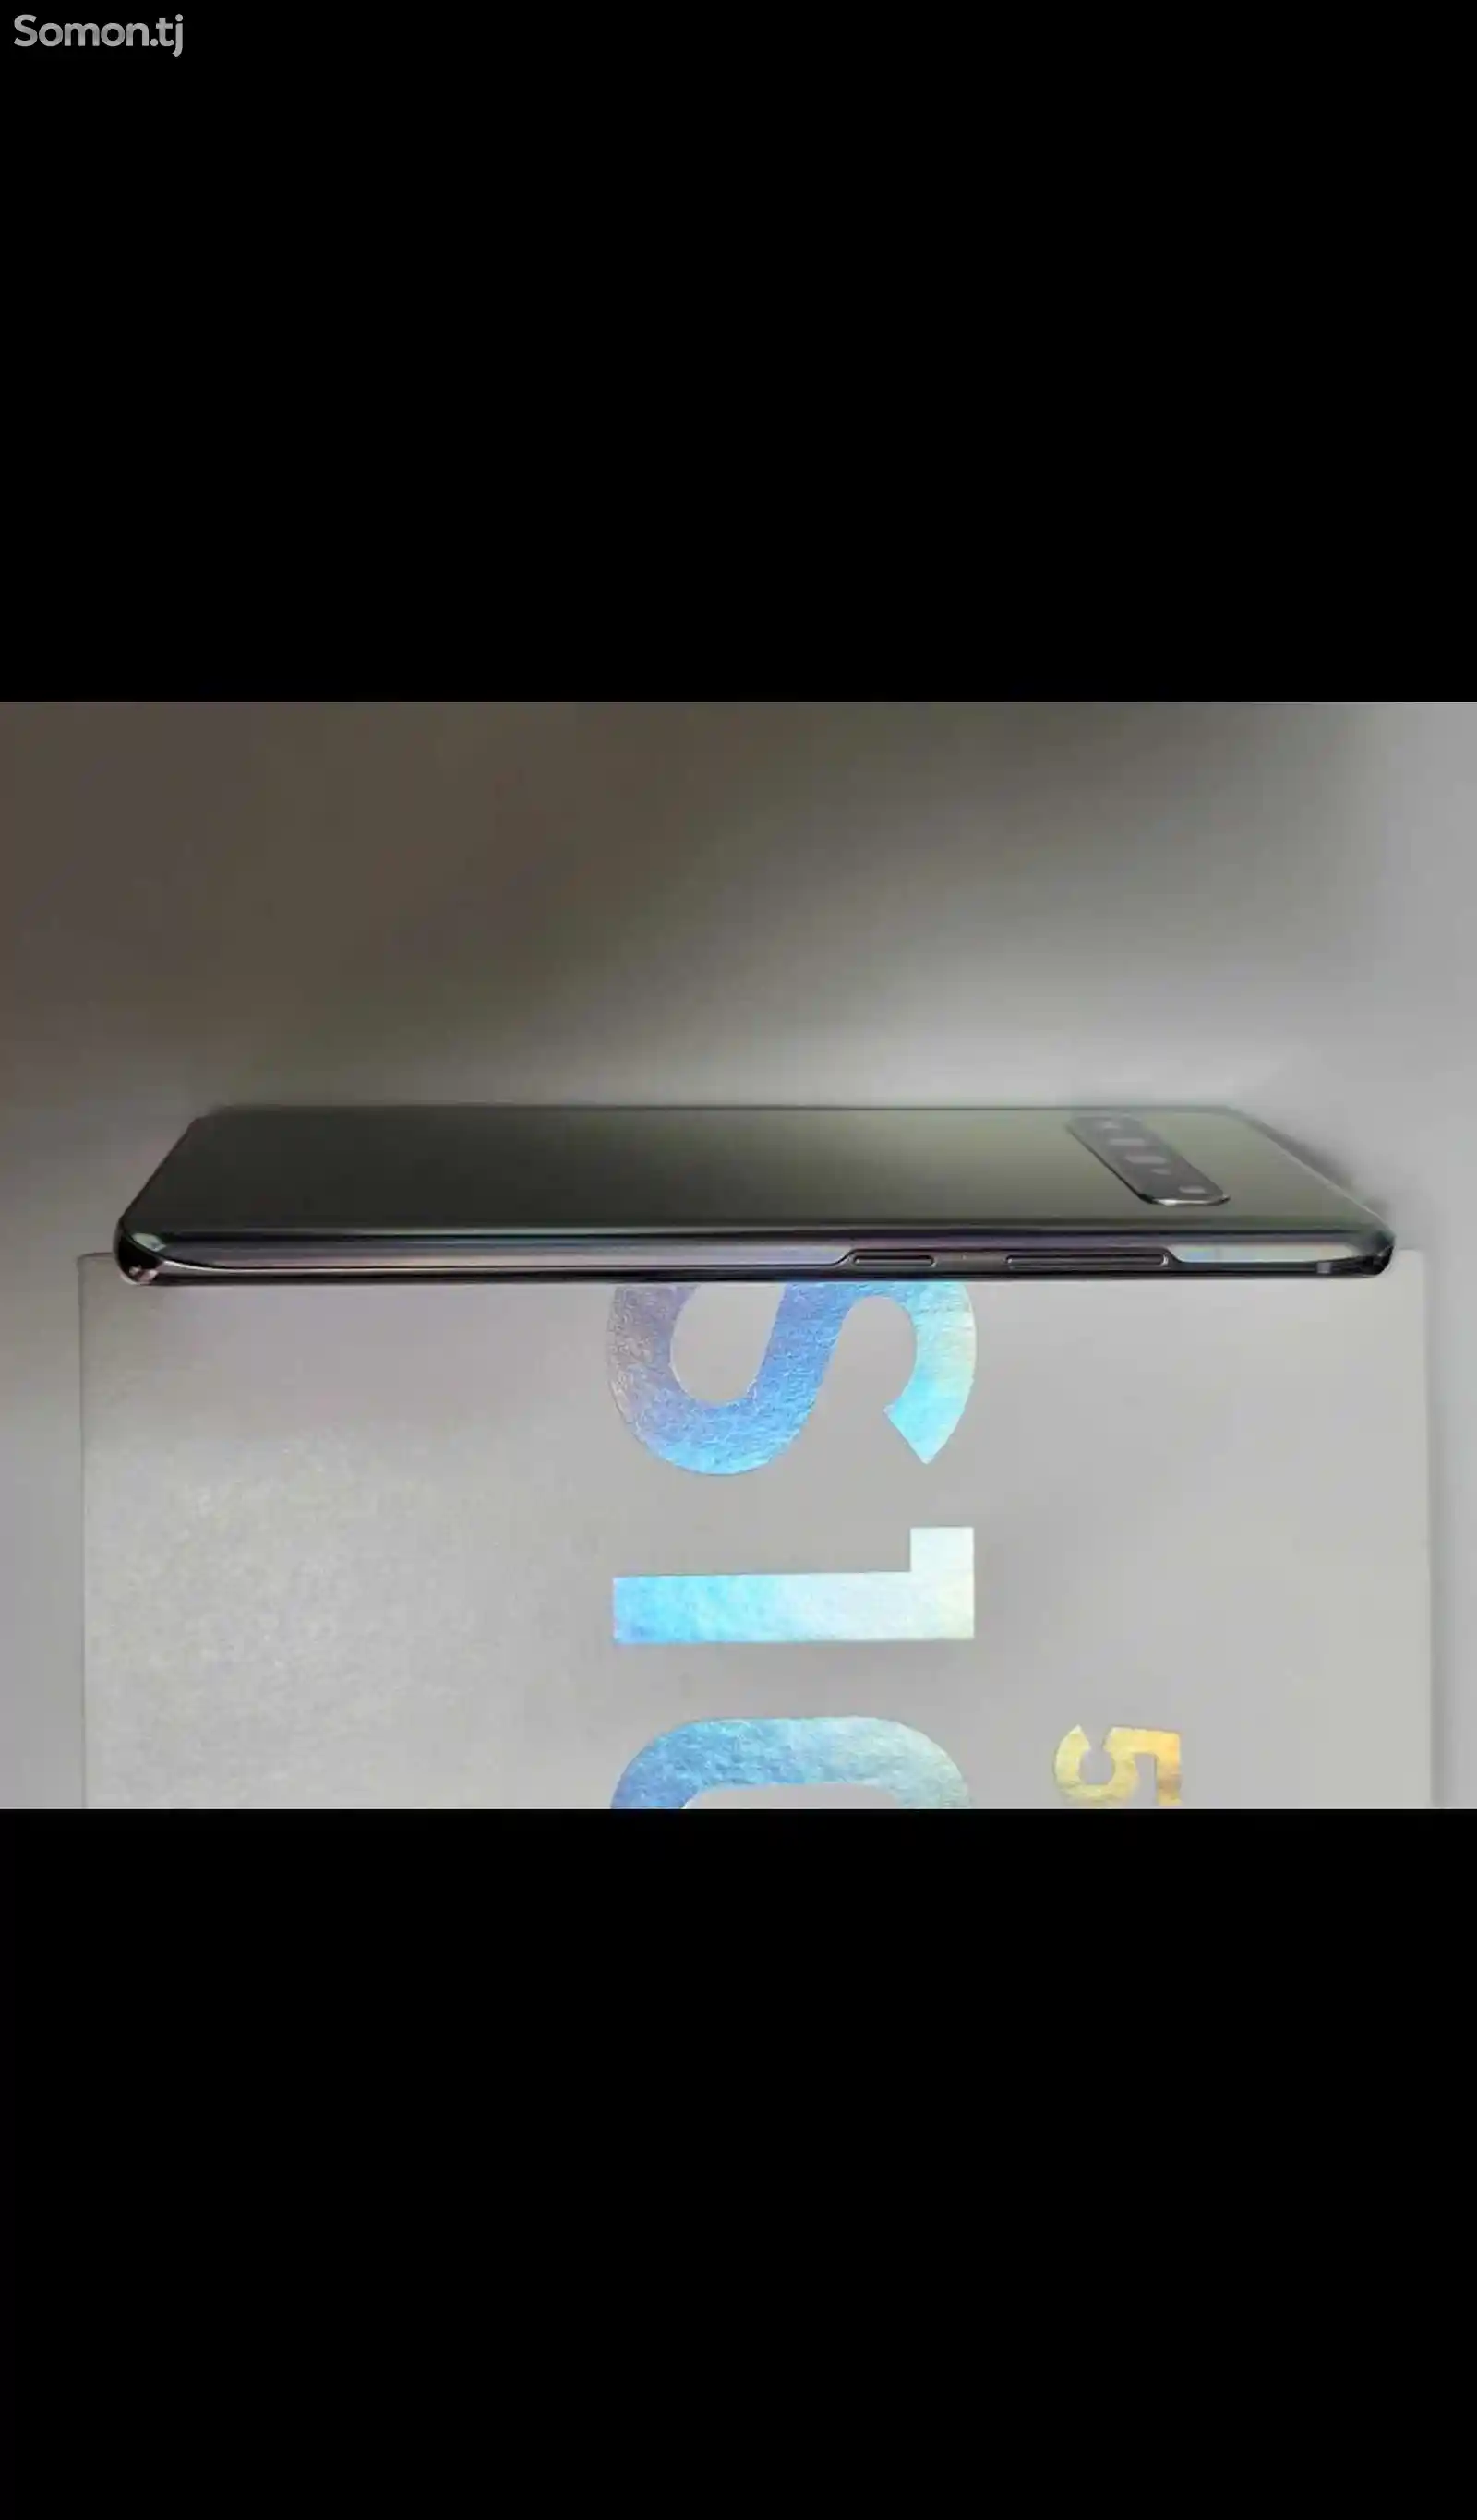 Samsung Galaxy S10-5